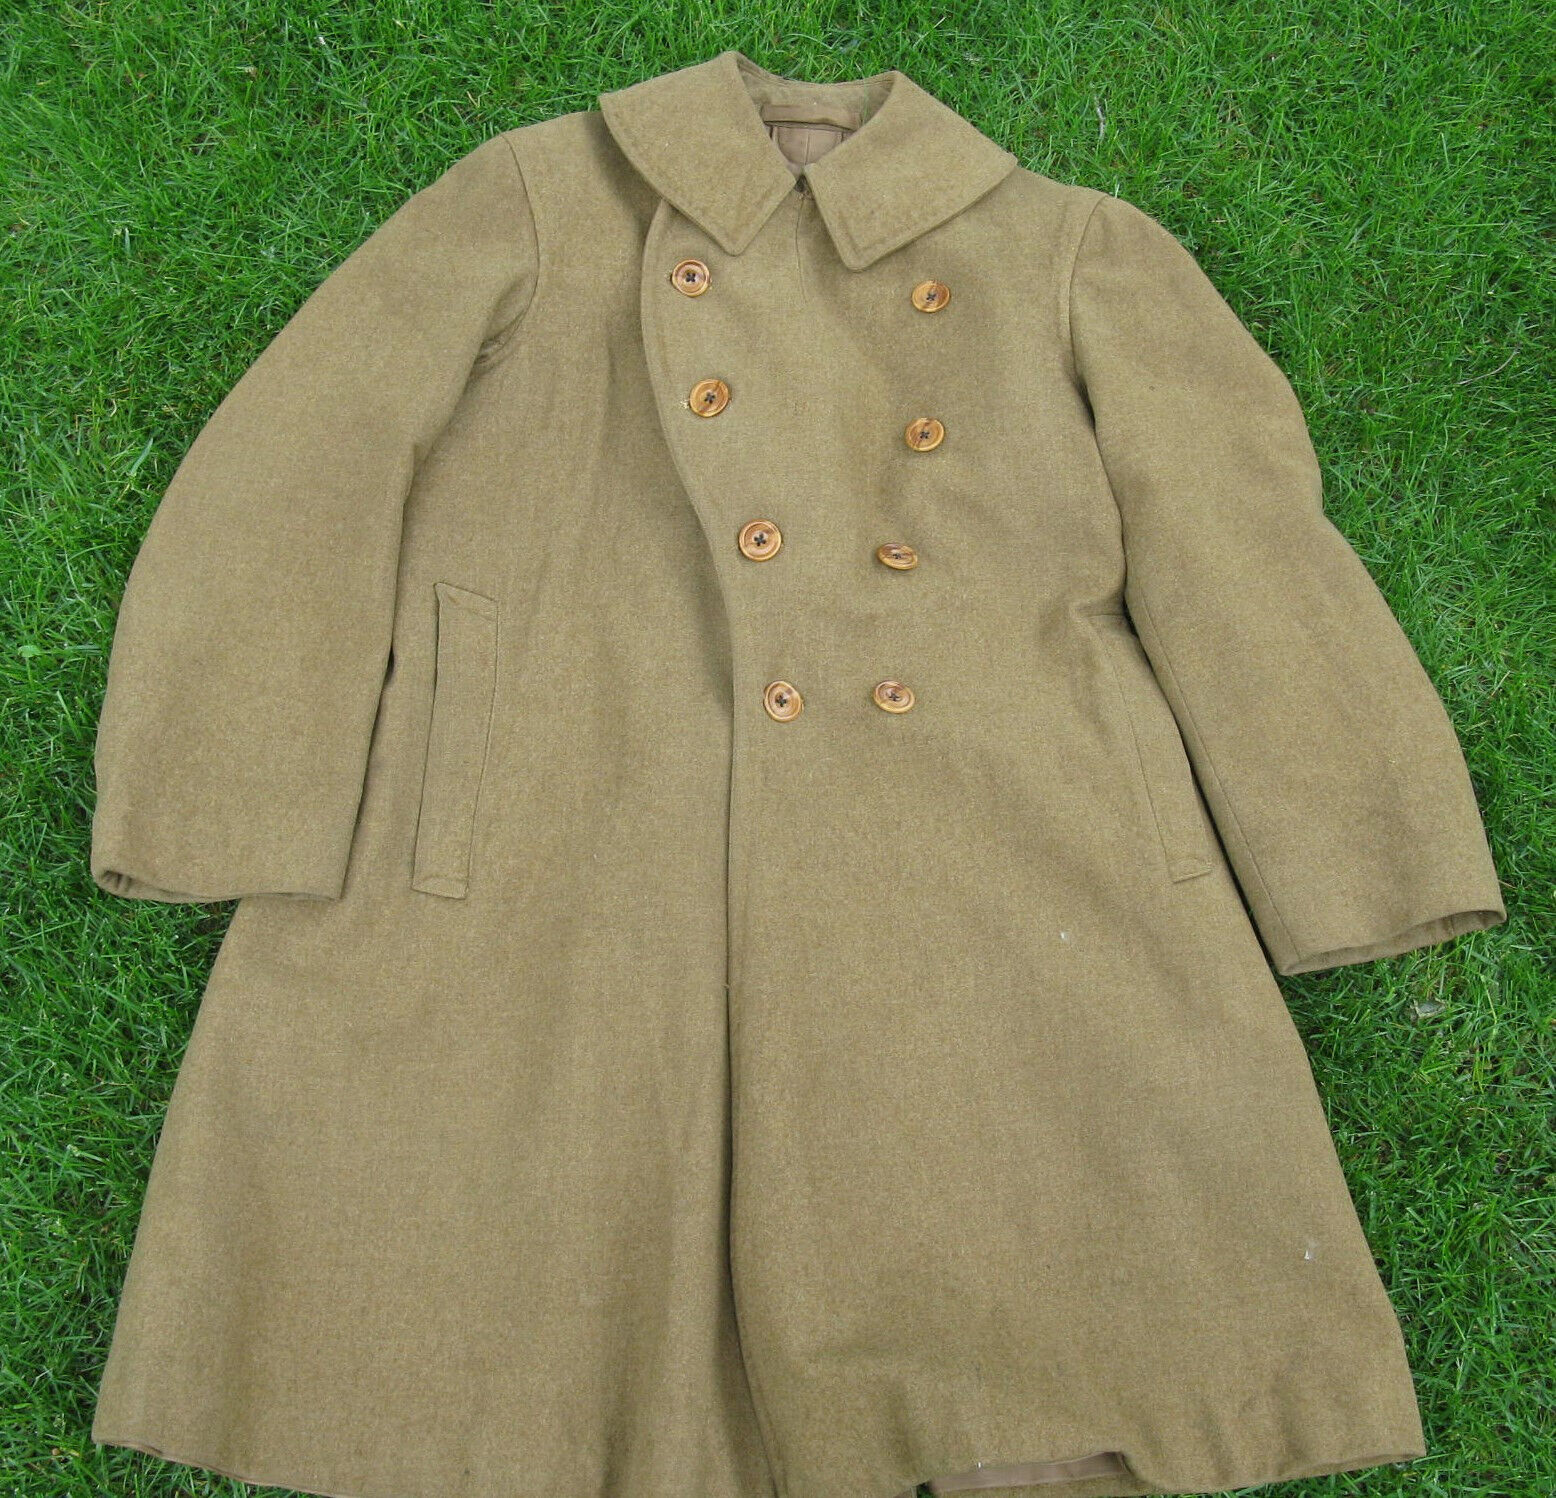 Rare Pre-WWI M1907 Army Overcoat, Original, Size 40